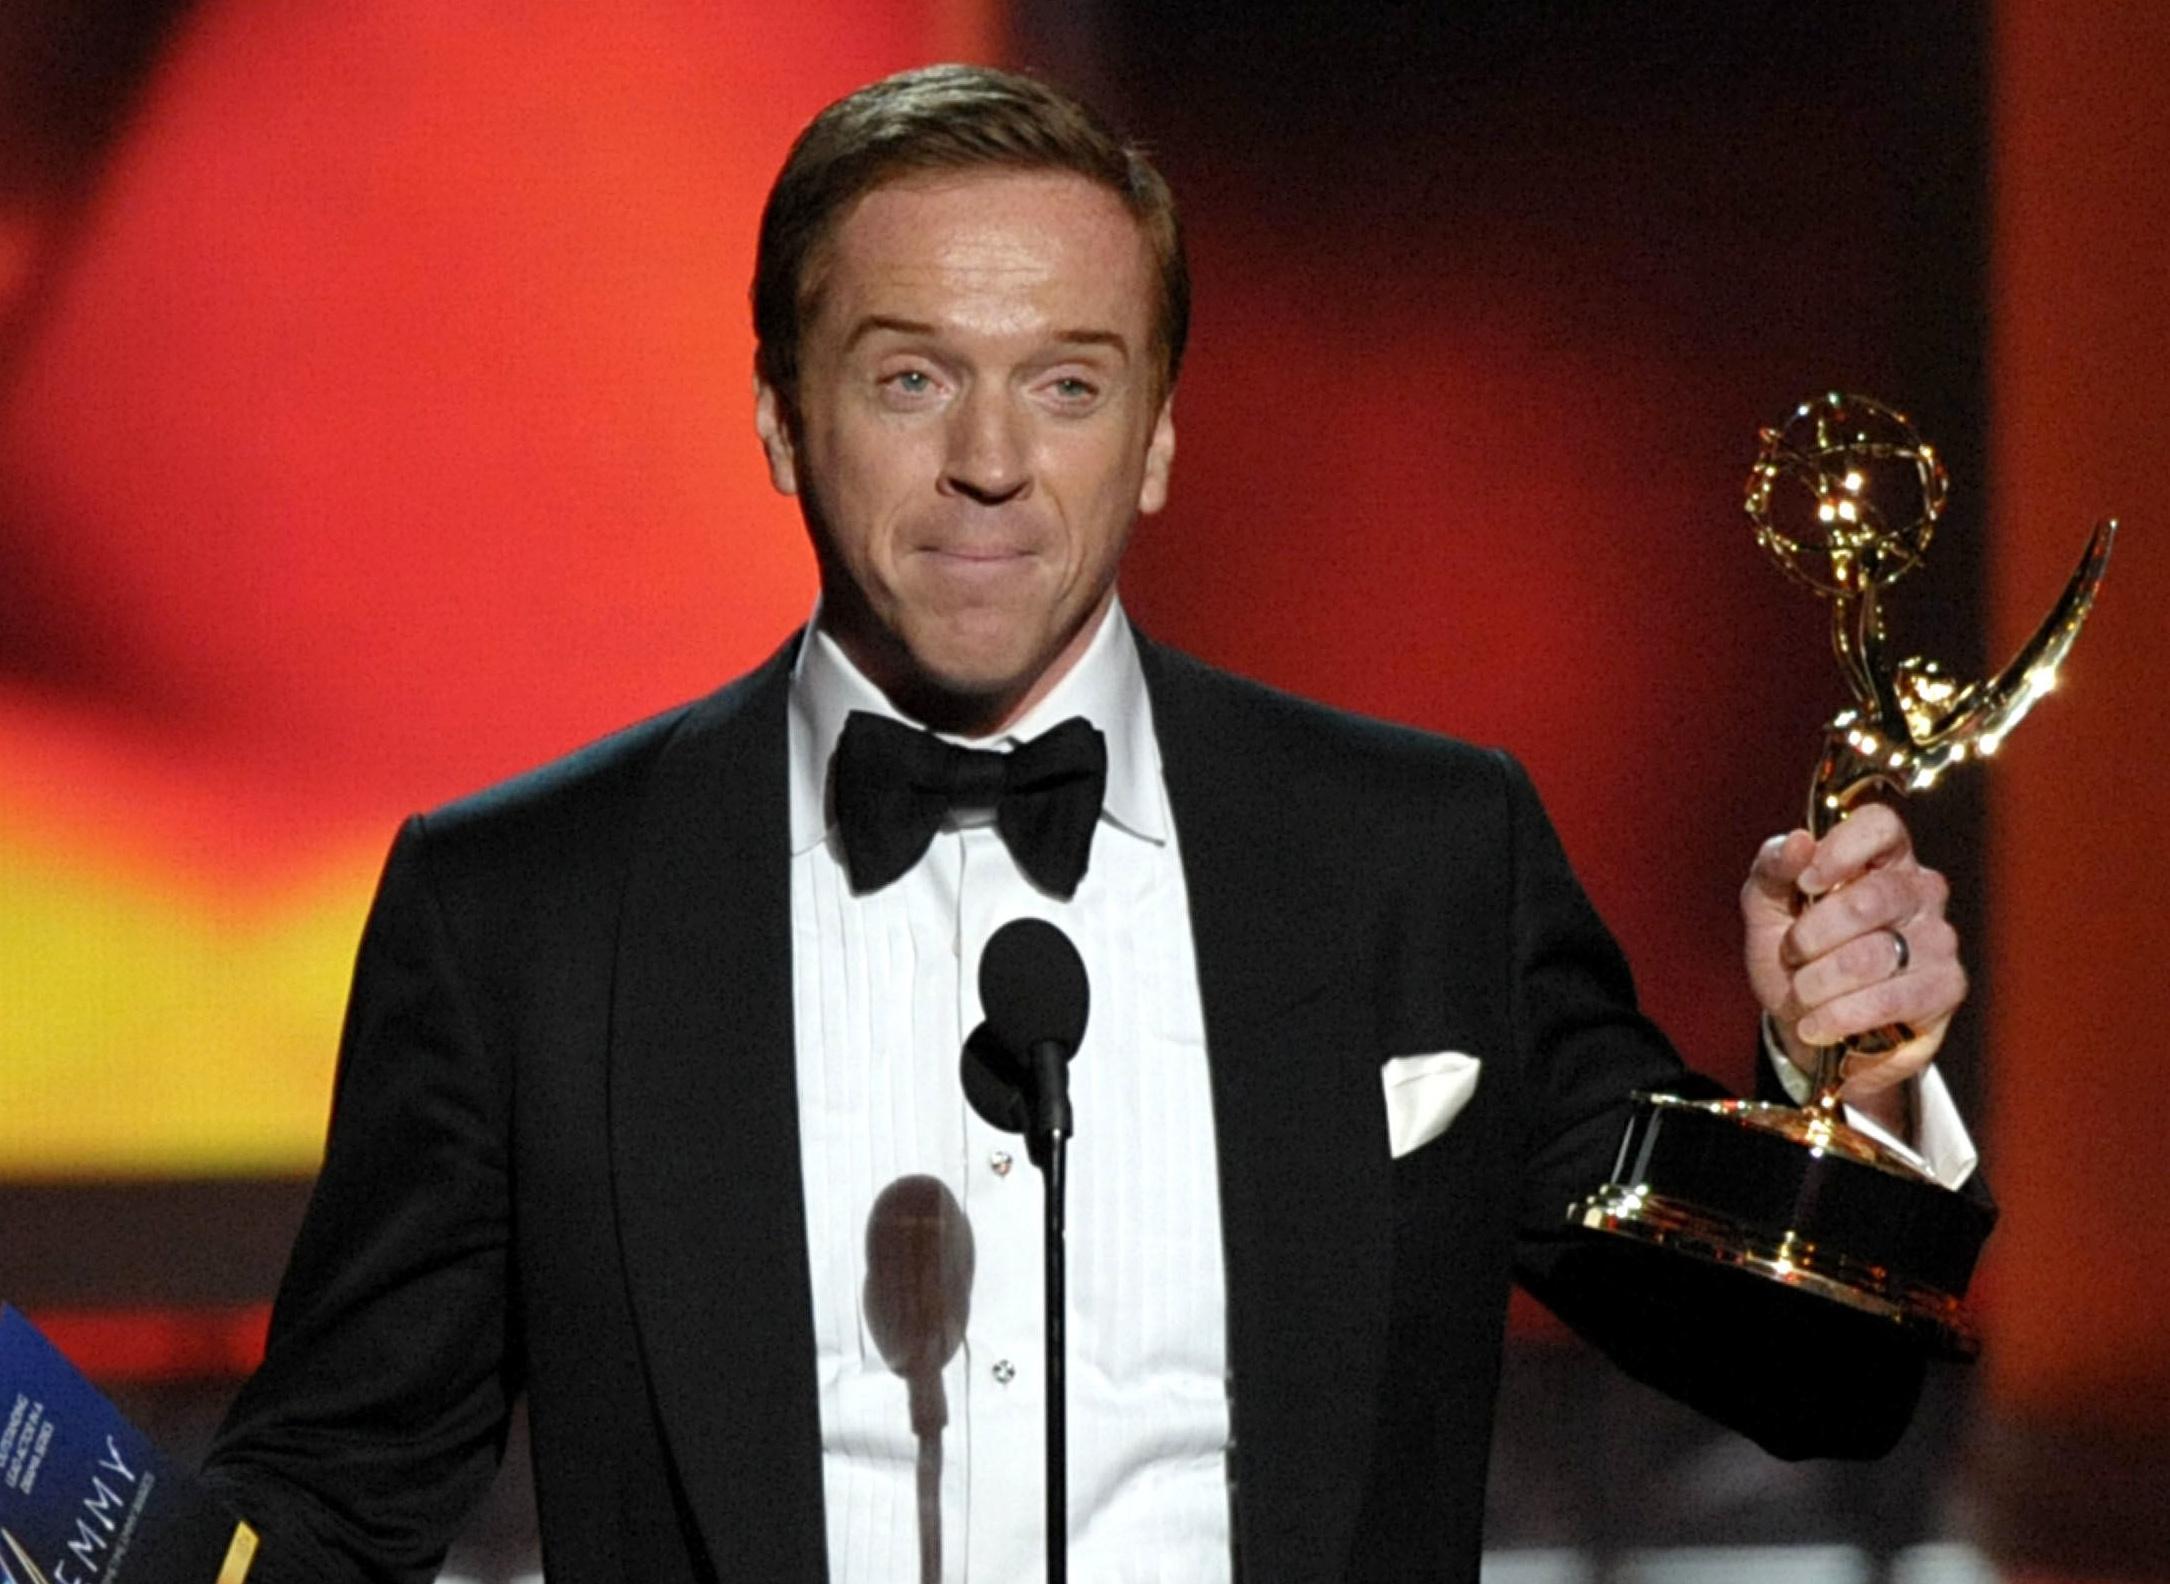 [News] Emmy Awards 2012 : le palmarès !